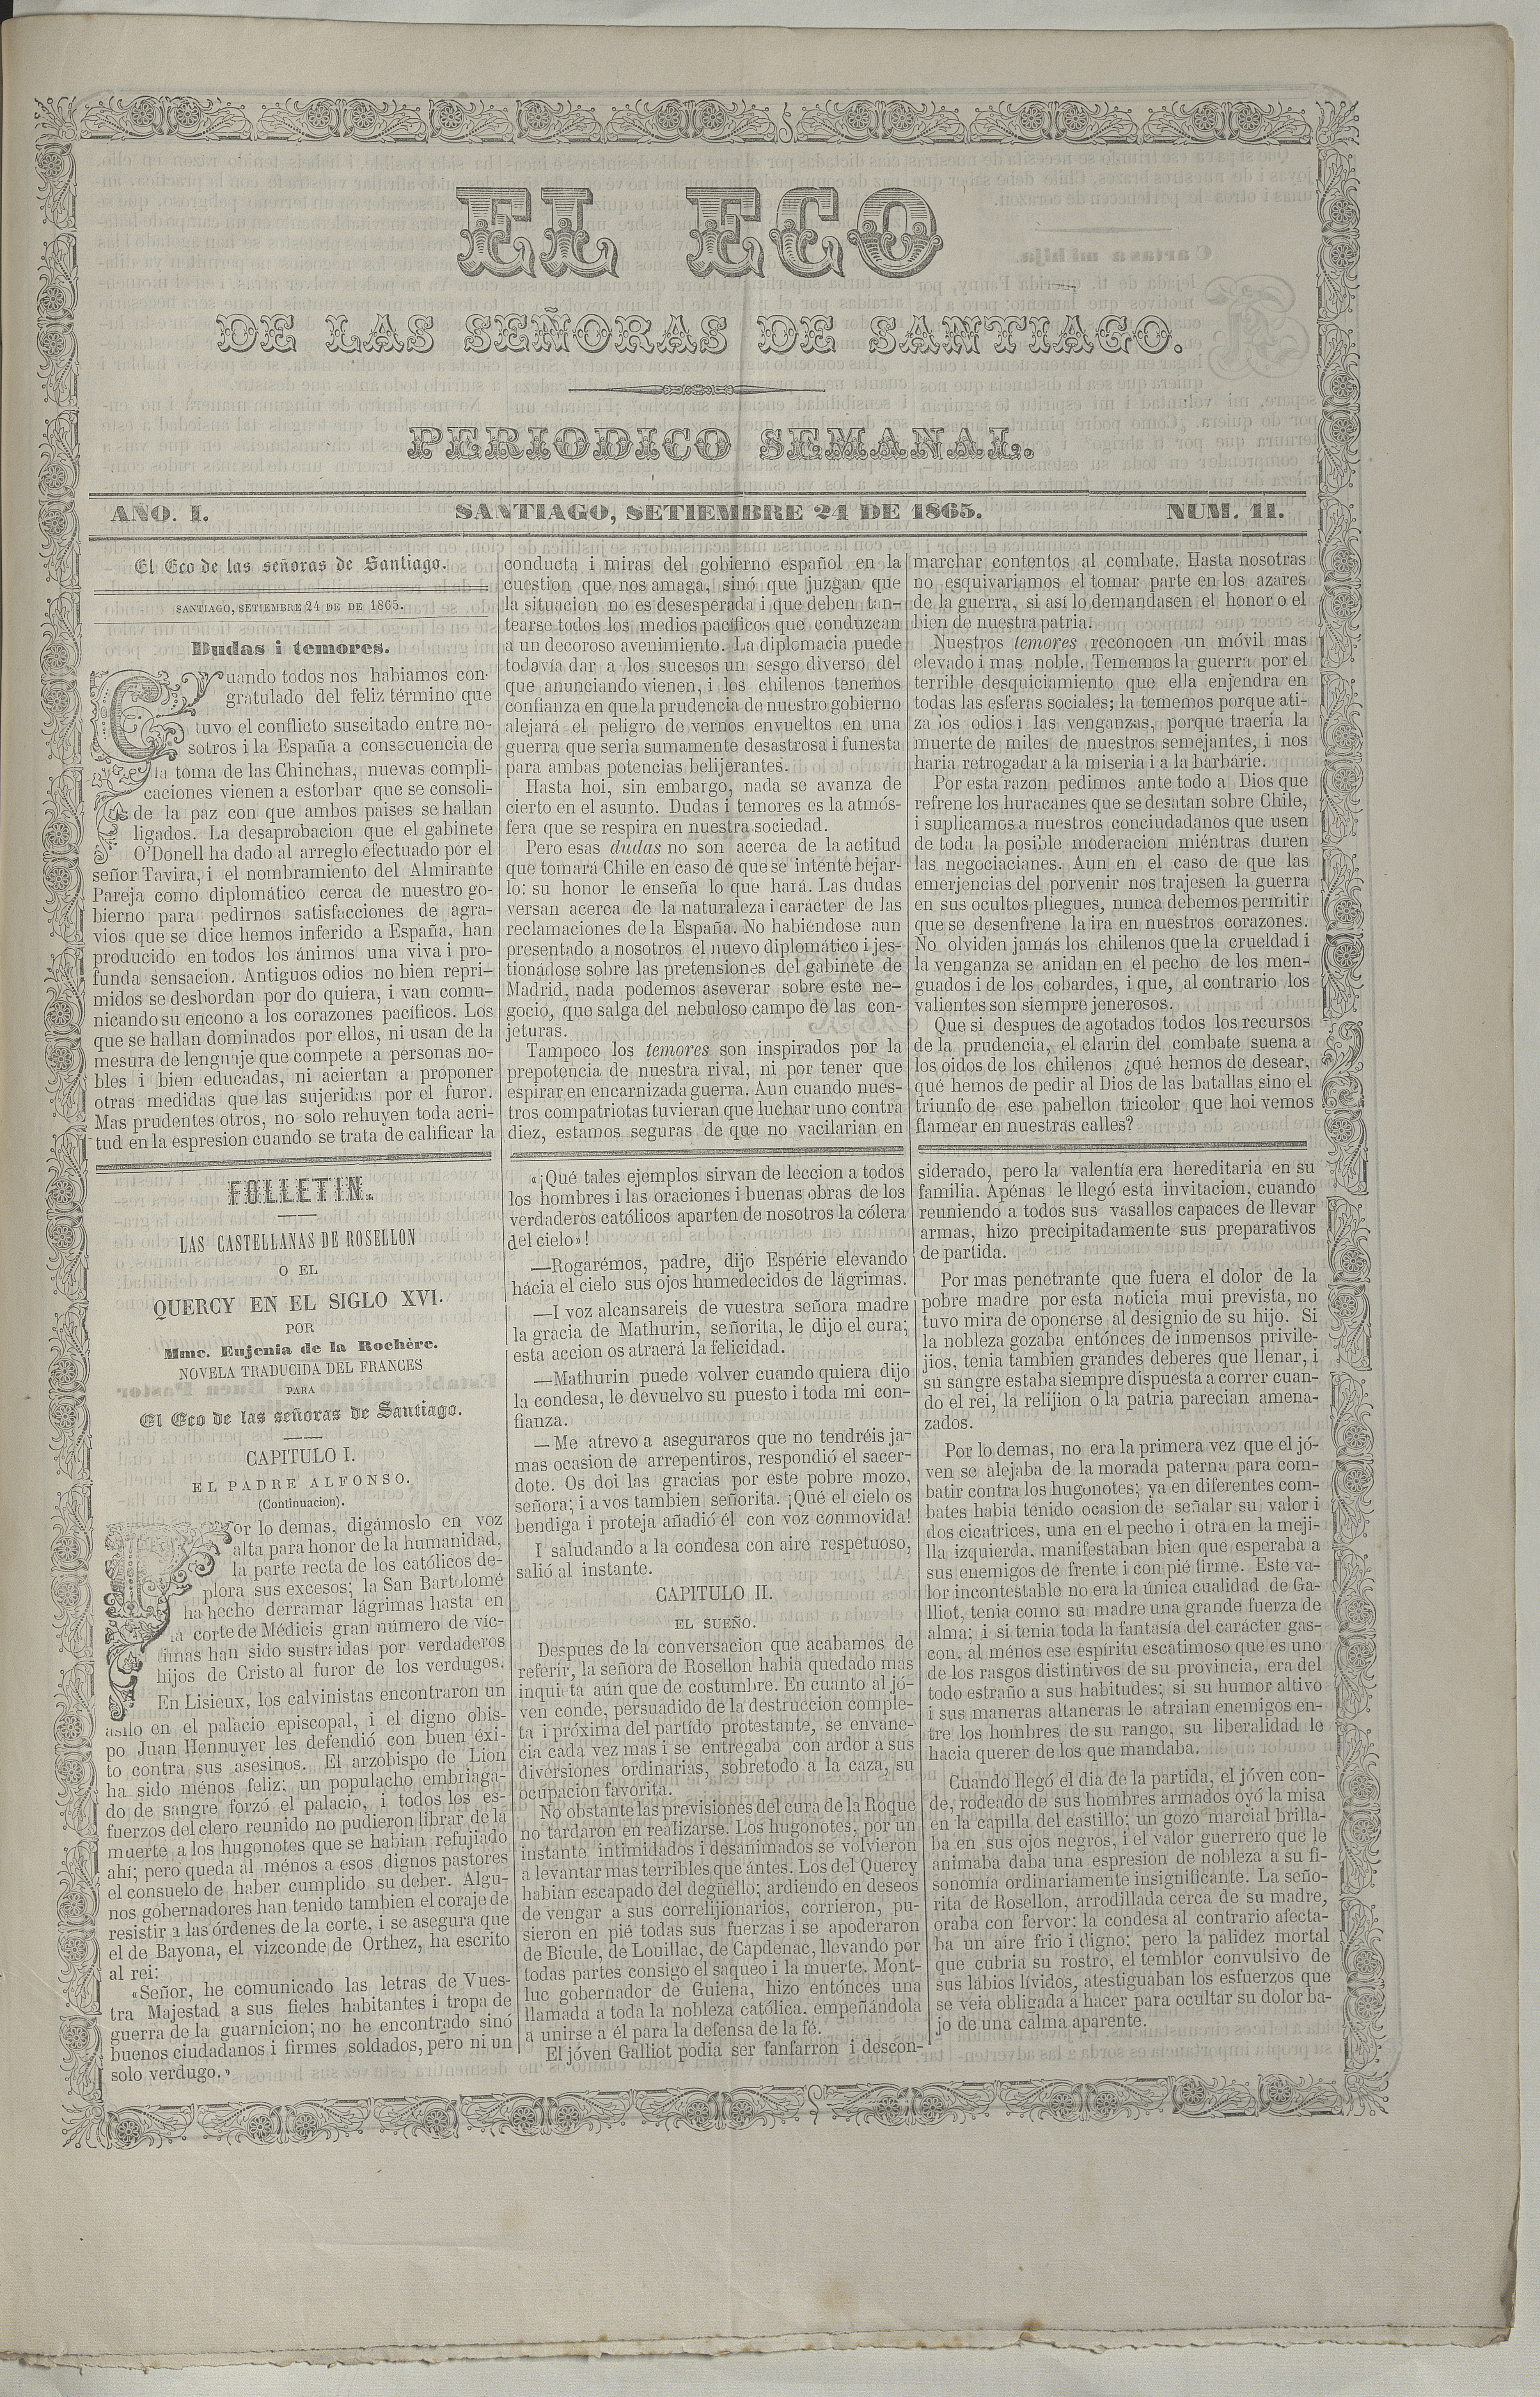 El eco de las señoras. Año 1, número 11, 24 de septiembre de 1865